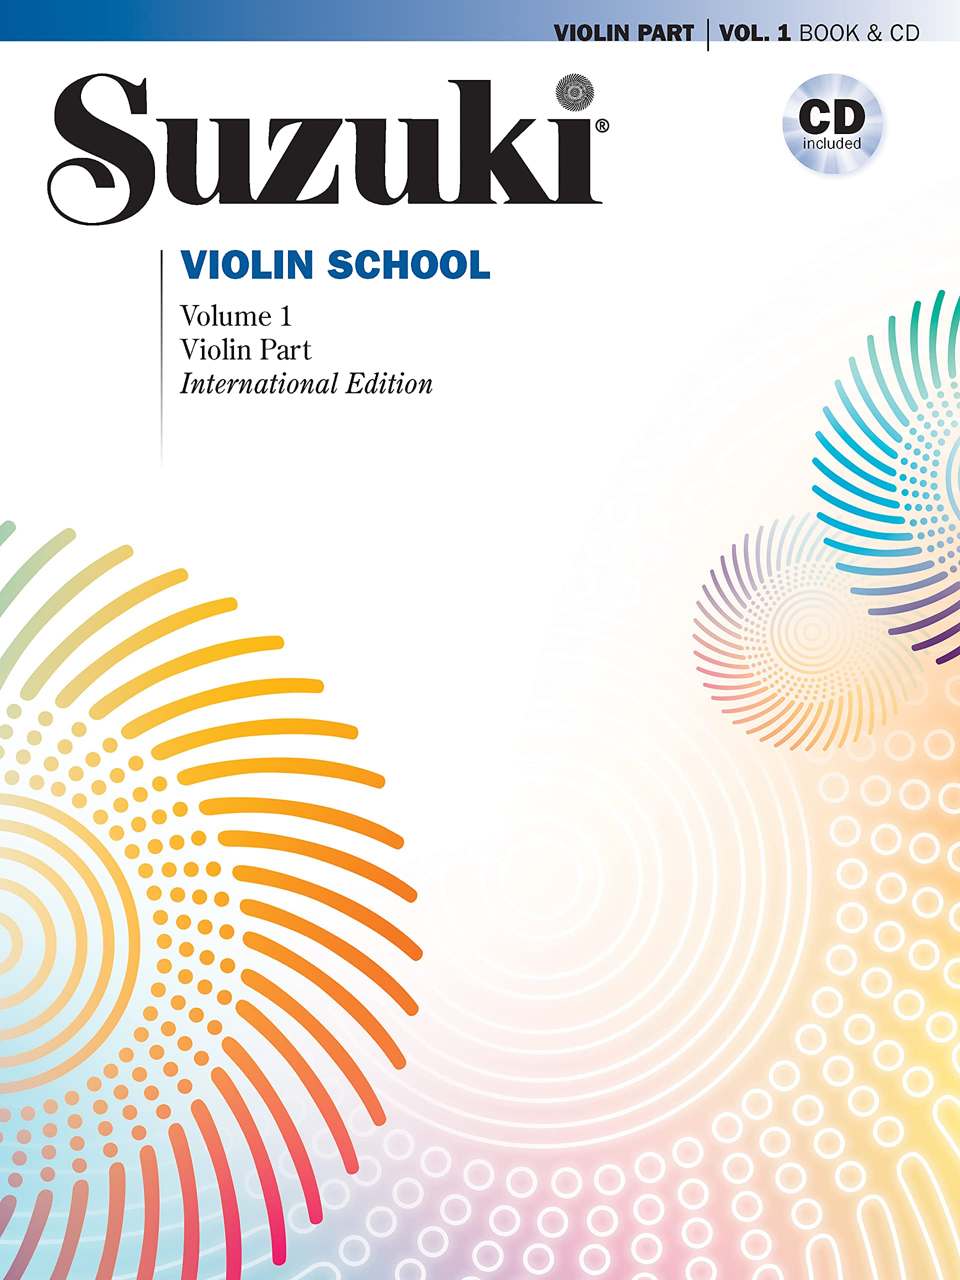 Best Violin Books - Suzuki Violin School Violin Part - Volume 1